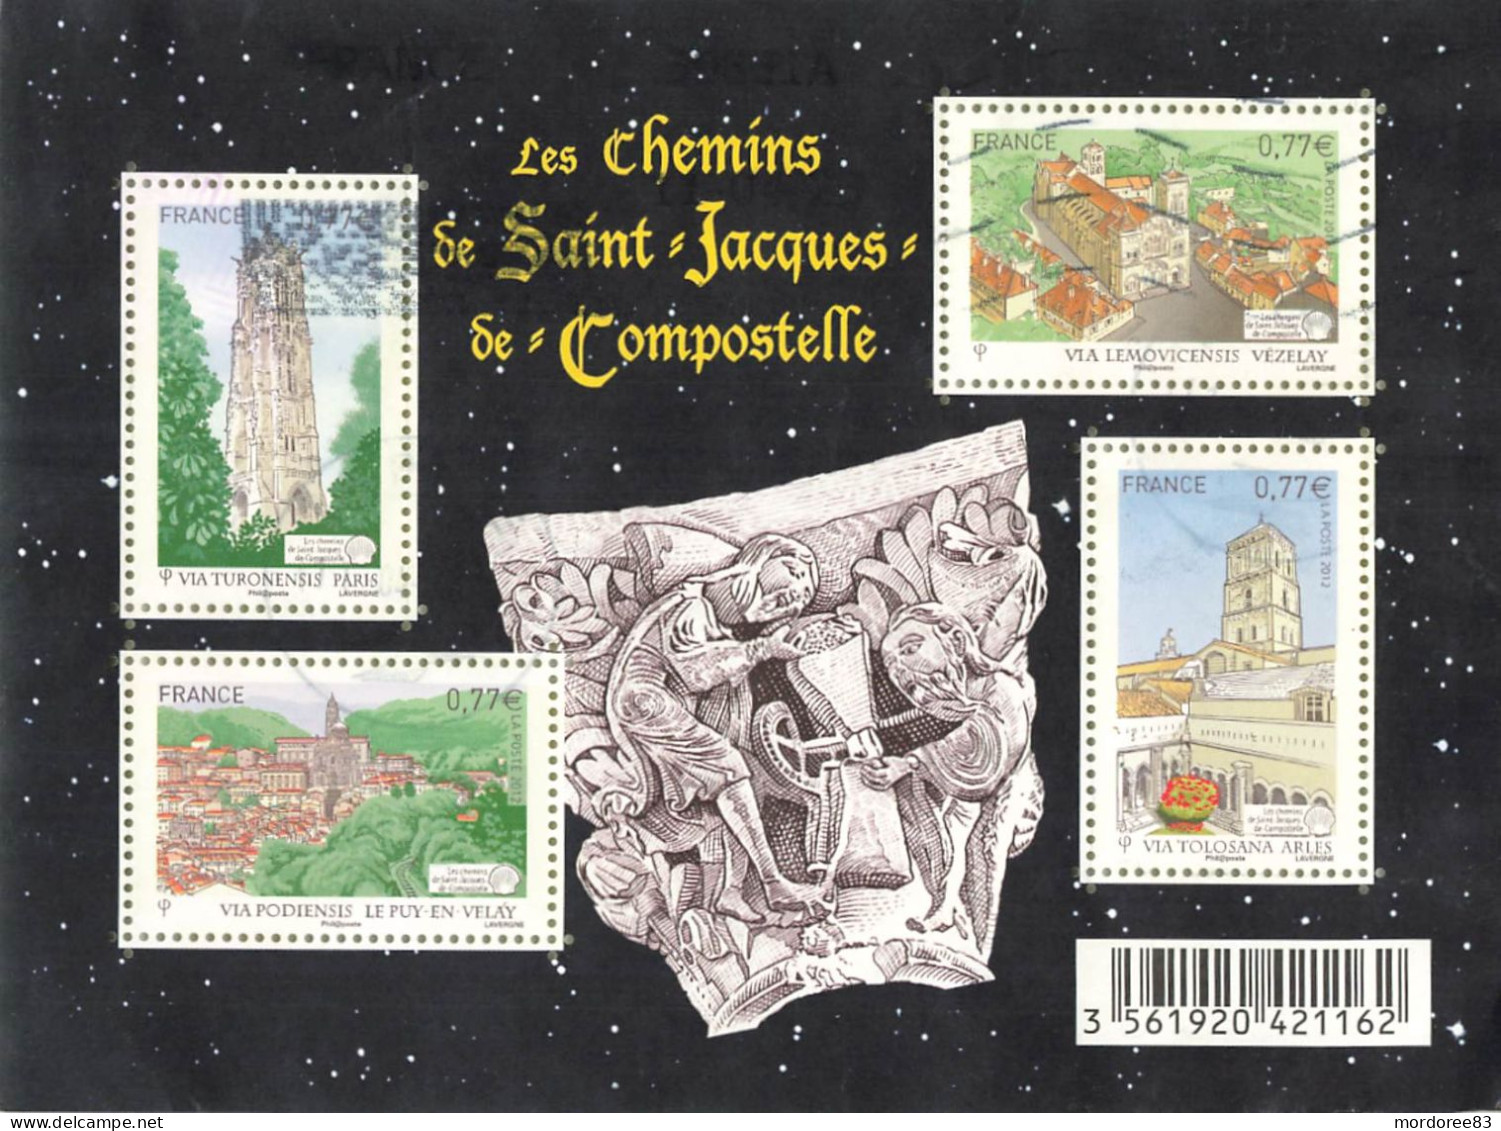 FRANCE 2012 BLOC OBLITERE LES CHEMINS DE SAINT JACQUES DE COMPOSTELLE - F 4641 - - Used